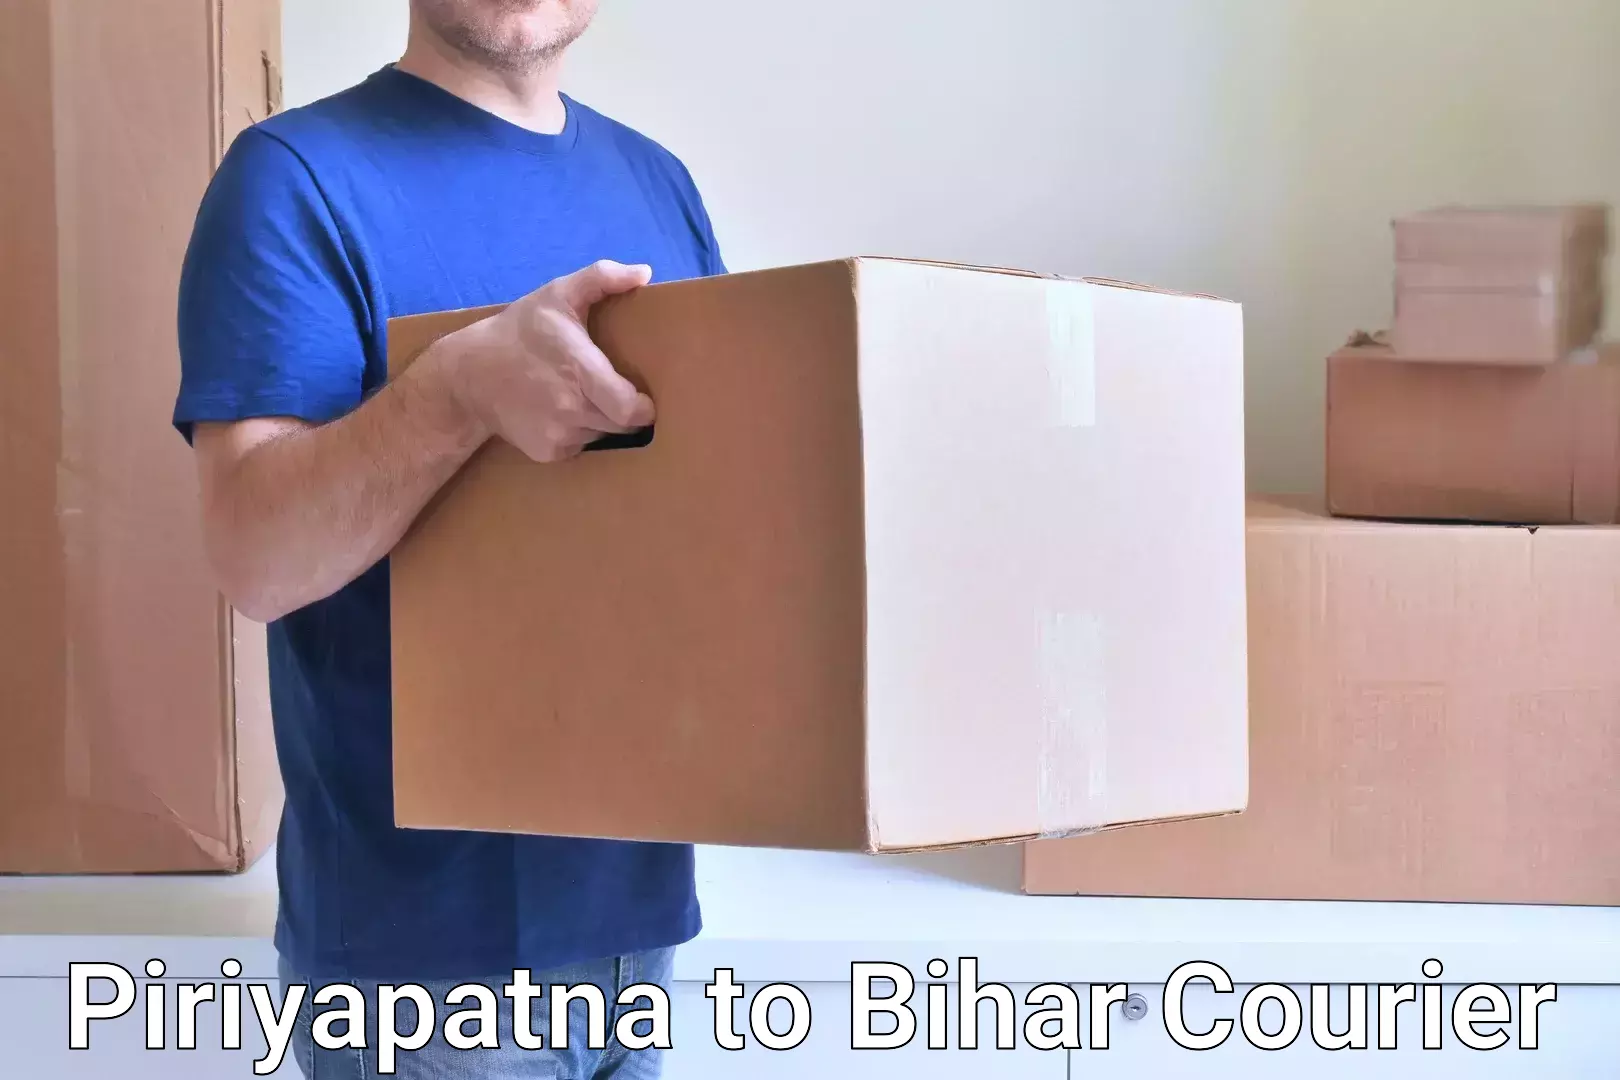 Premium courier services Piriyapatna to Aurai